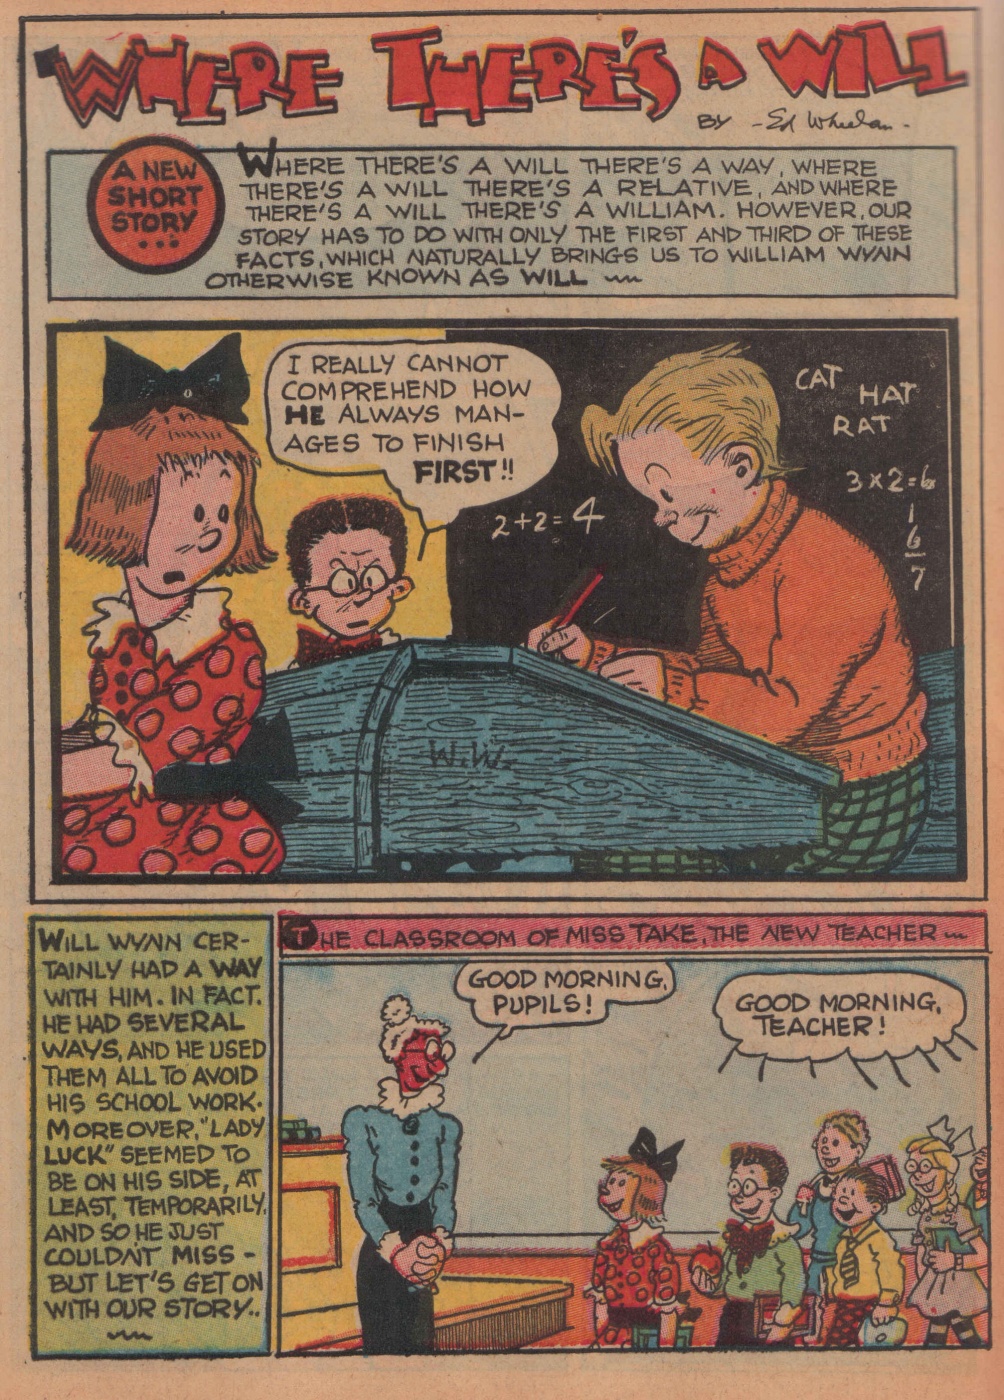 Super Dooper Funny Comics (12)